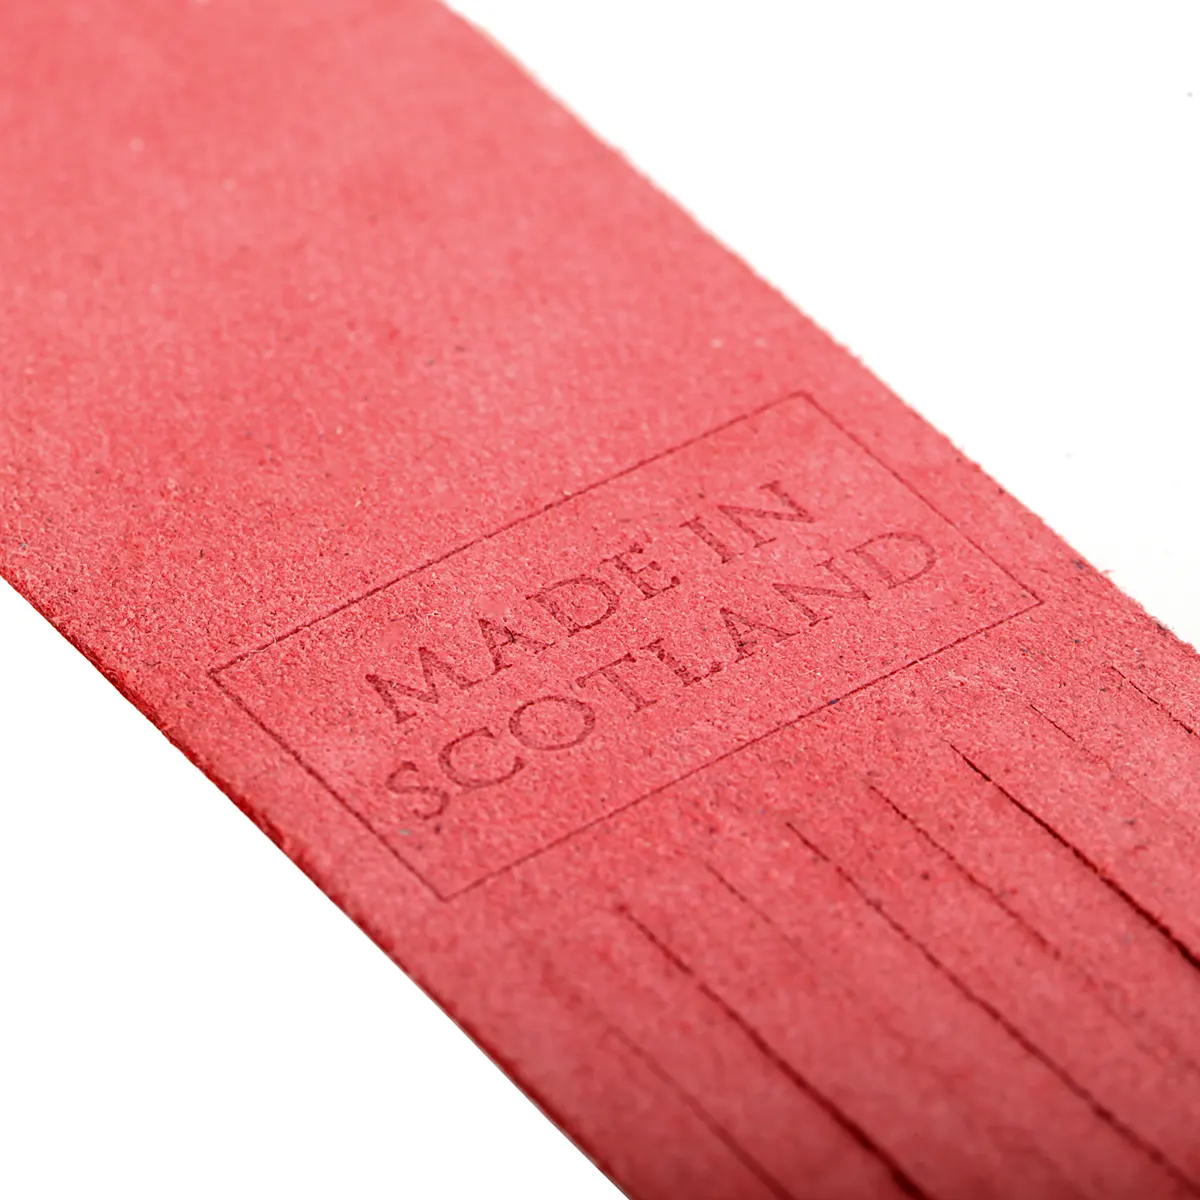 Edinburgh - Leder Lesezeichen aus Schottland in Rot  - Made in Scotland